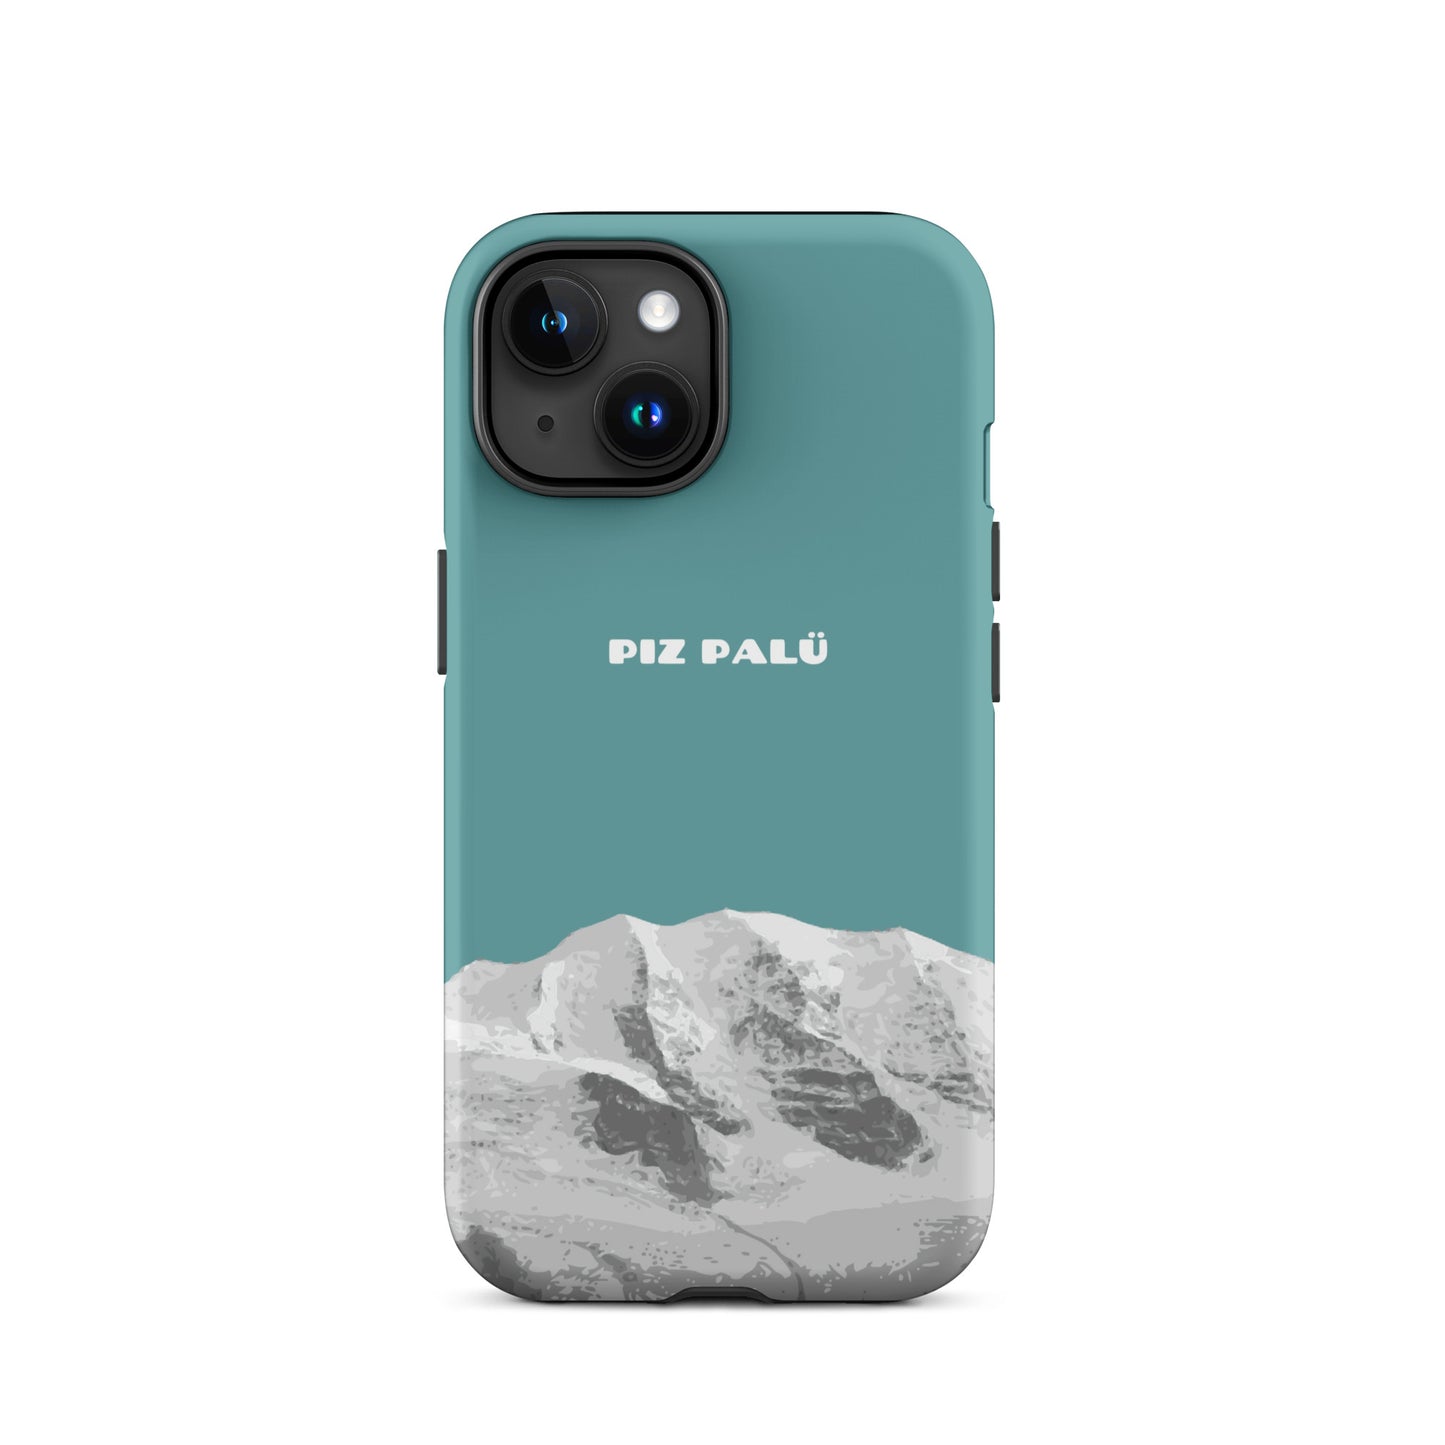 Hülle für das iPhone 15 von Apple in der Farbe Kadettenblau, dass den Piz Palü in Graubünden zeigt.